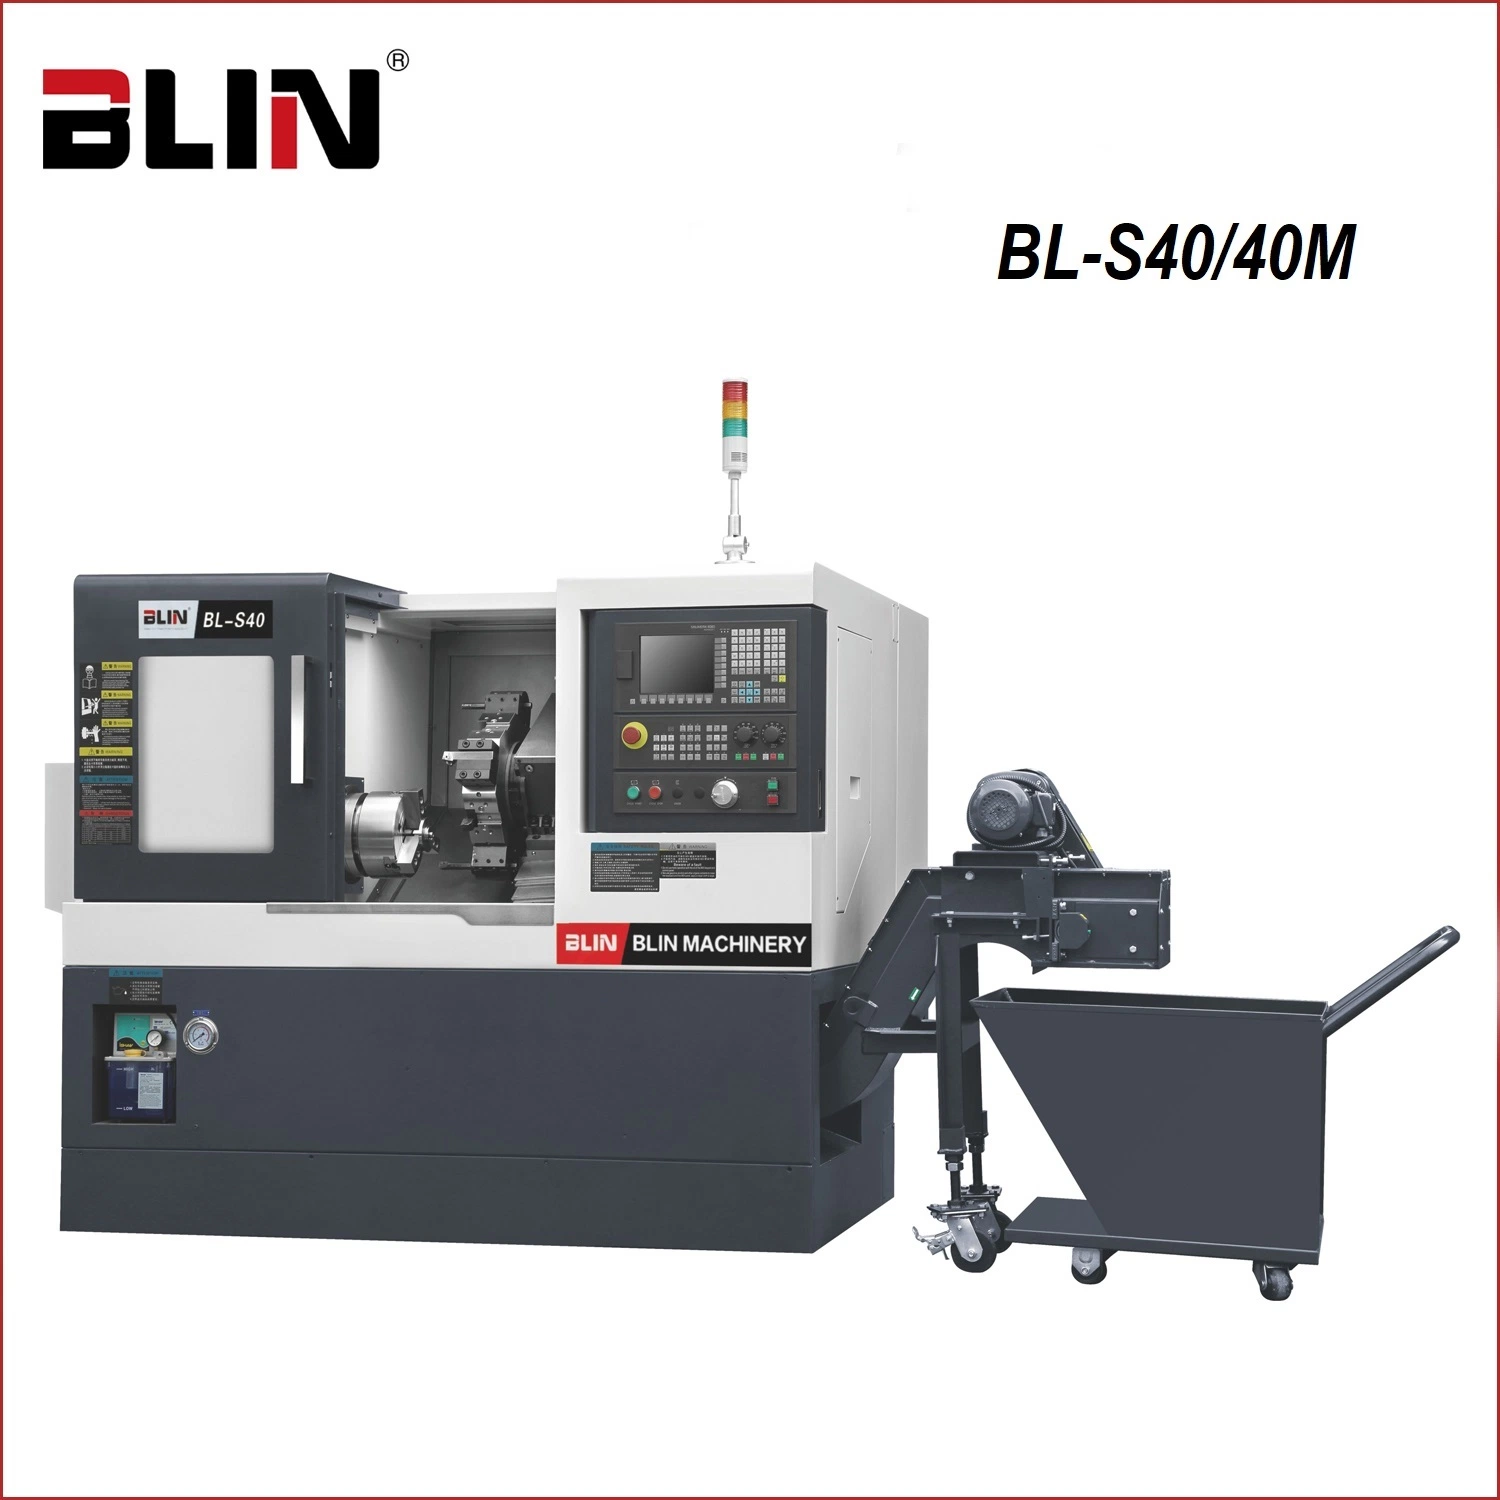 ماكينة مزودة بتقنية تايوان مزودة بسرير مزدوج عالي الدقة من نوع CNC (BL-S40/40 M)